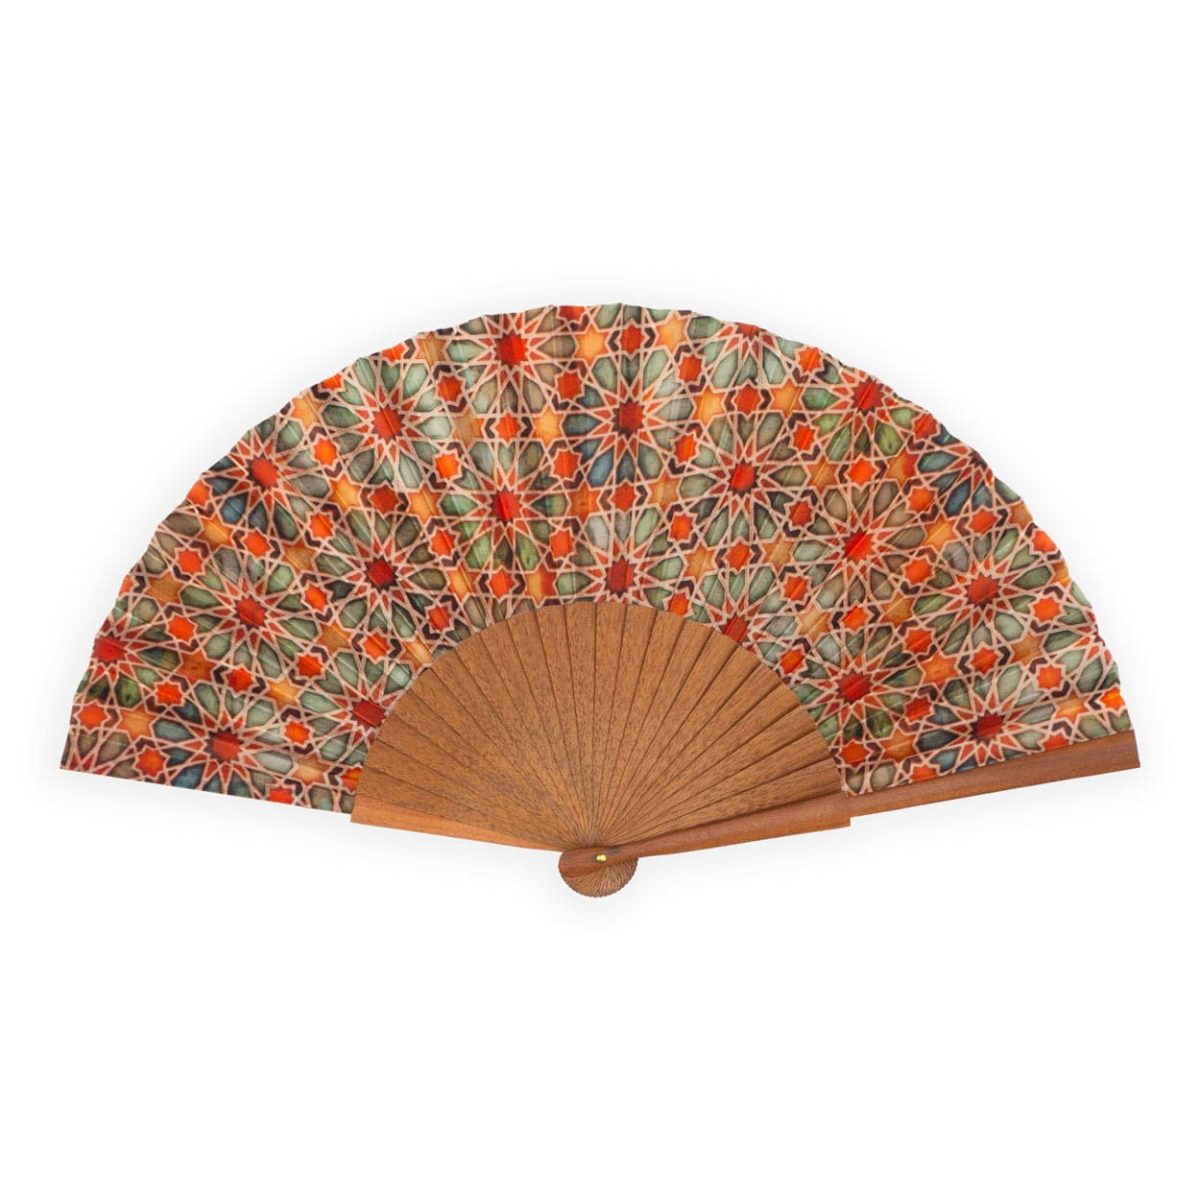 Orange silk fan inspired by islamic patterns